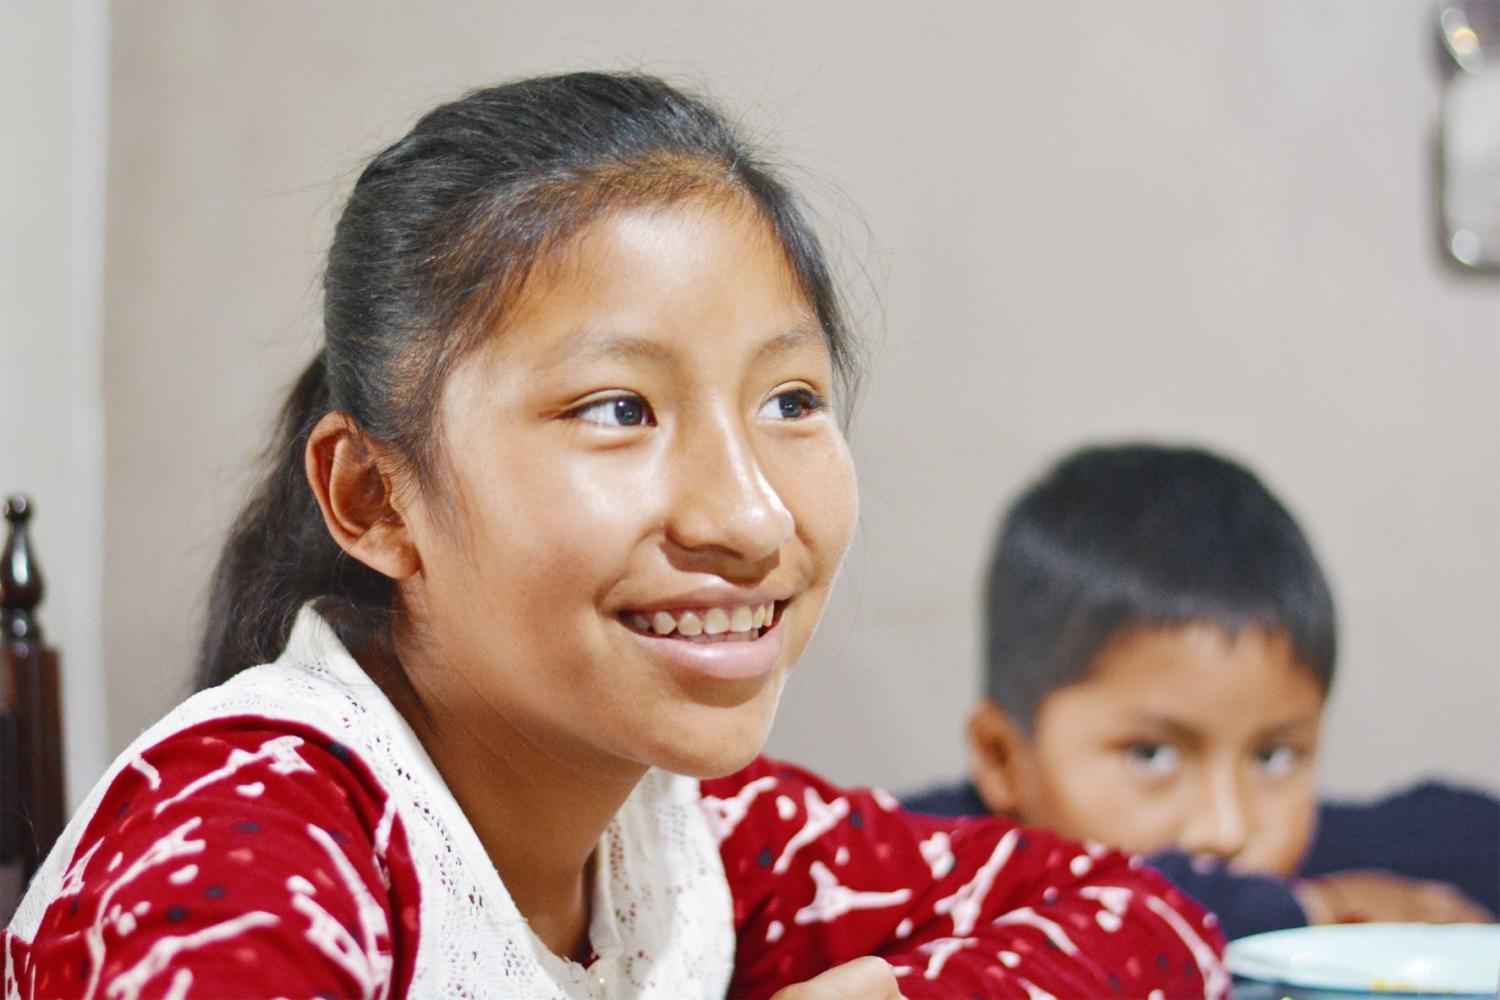 A Mayan girl smiles.